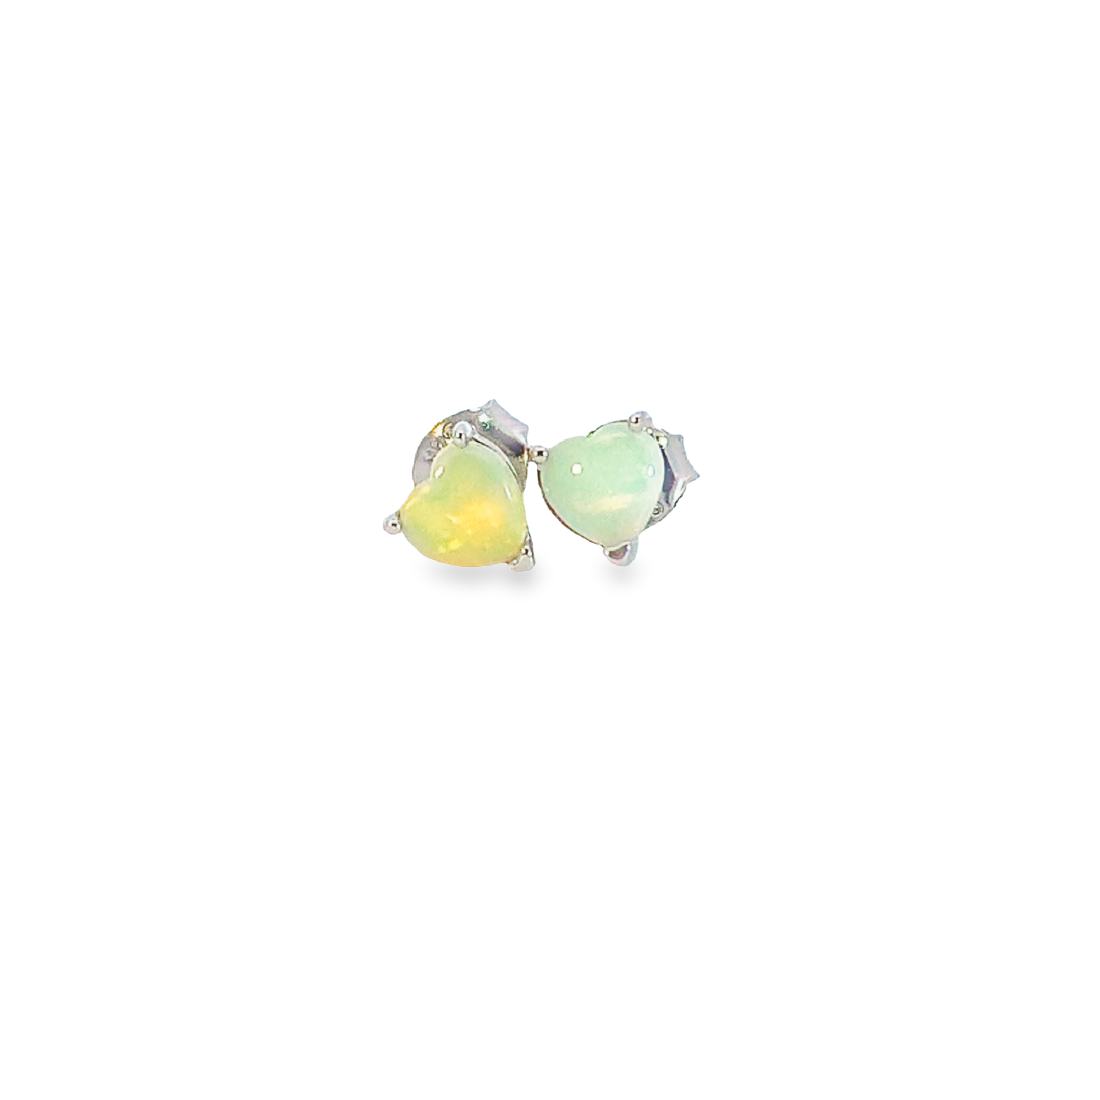 Sterling Silver 5mm Heart shape White Opal studs - Masterpiece Jewellery Opal & Gems Sydney Australia | Online Shop